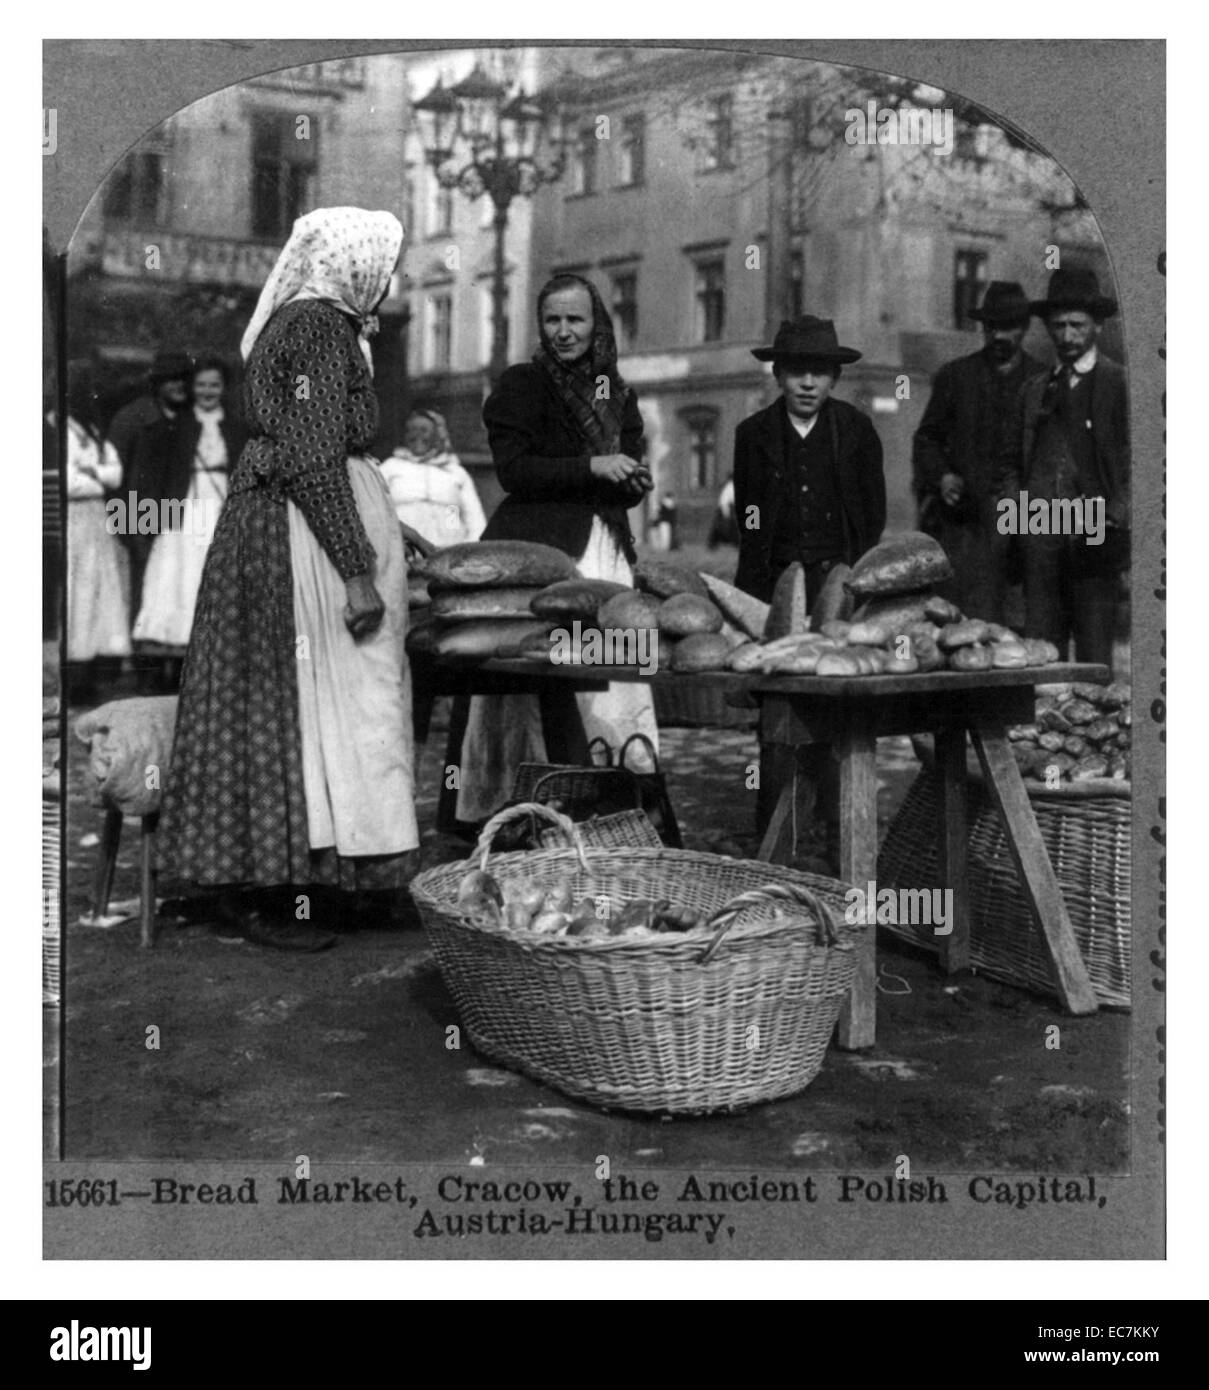 Brot-Markt in Cracow - die alte polnische Hauptstadt - Österreich-Ungarn. Stockfoto